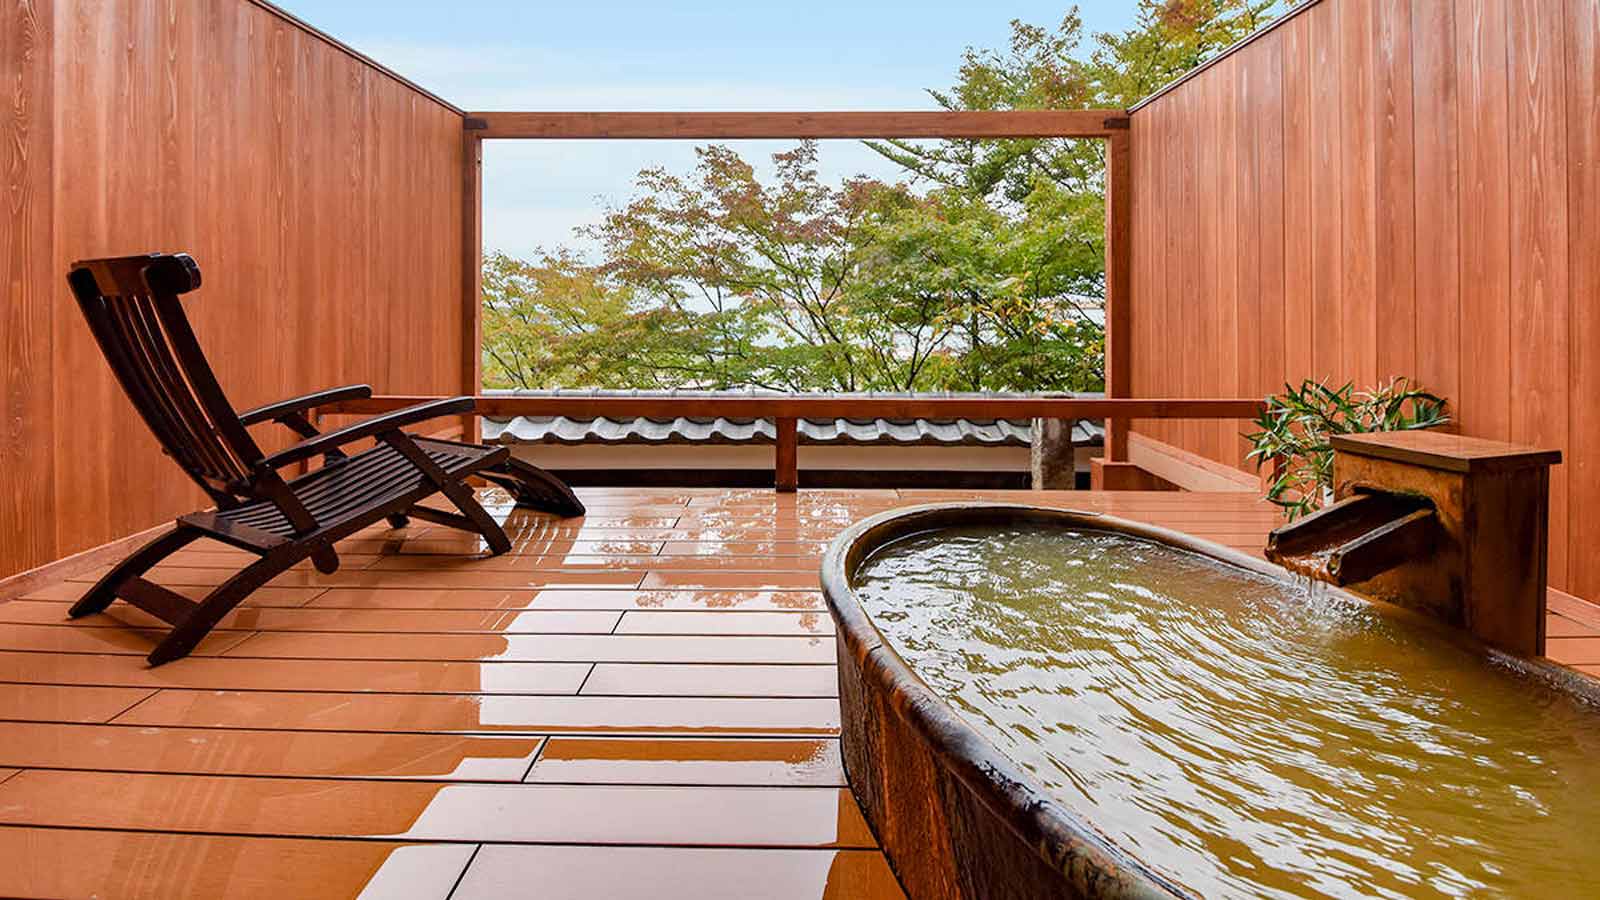 伊香保温泉の露天風呂付き客室のある人気宿ランキングTOP7